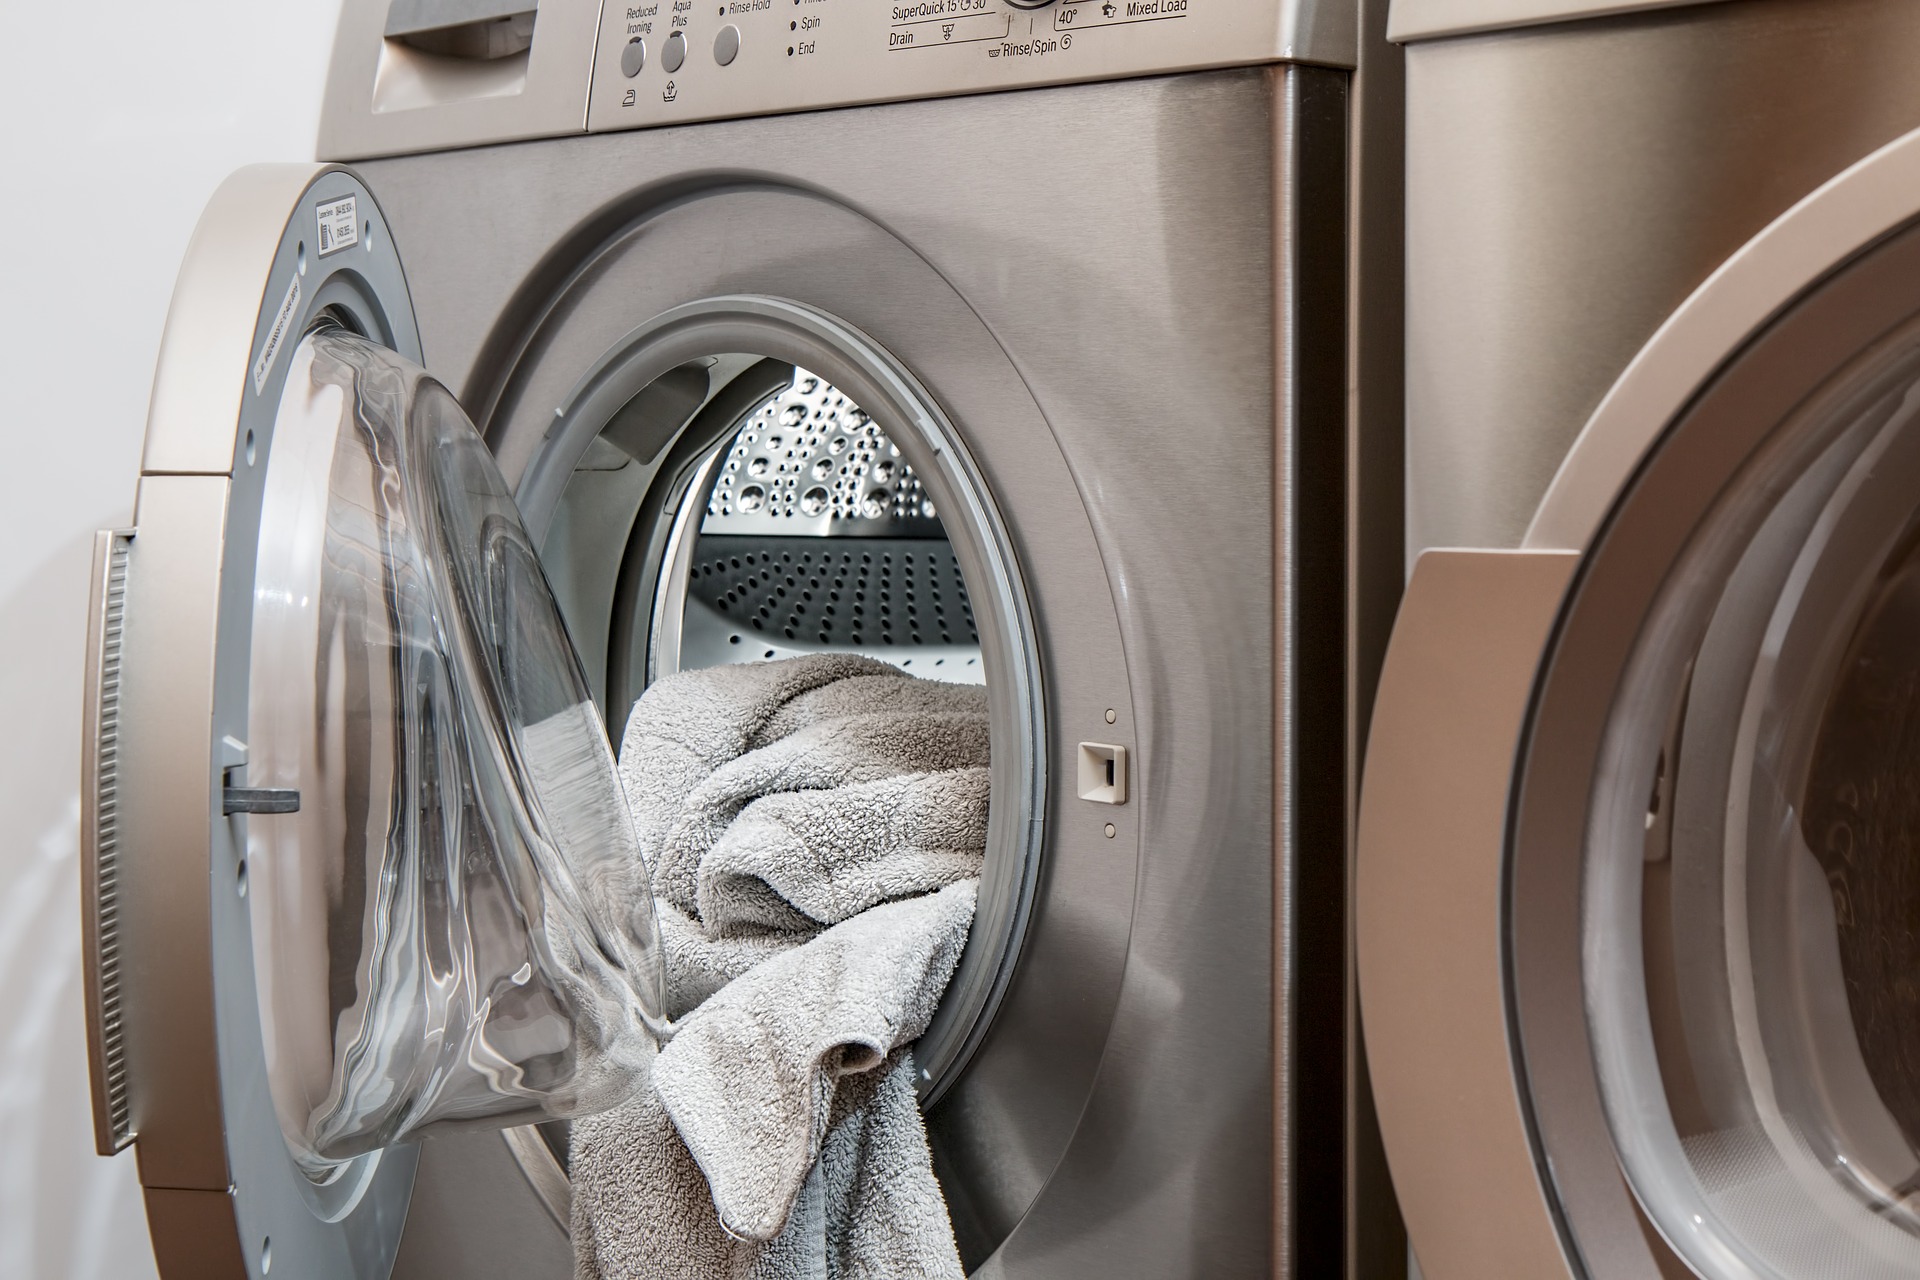 Les 5 problèmes courants et faciles à réparer sur une machine à laver